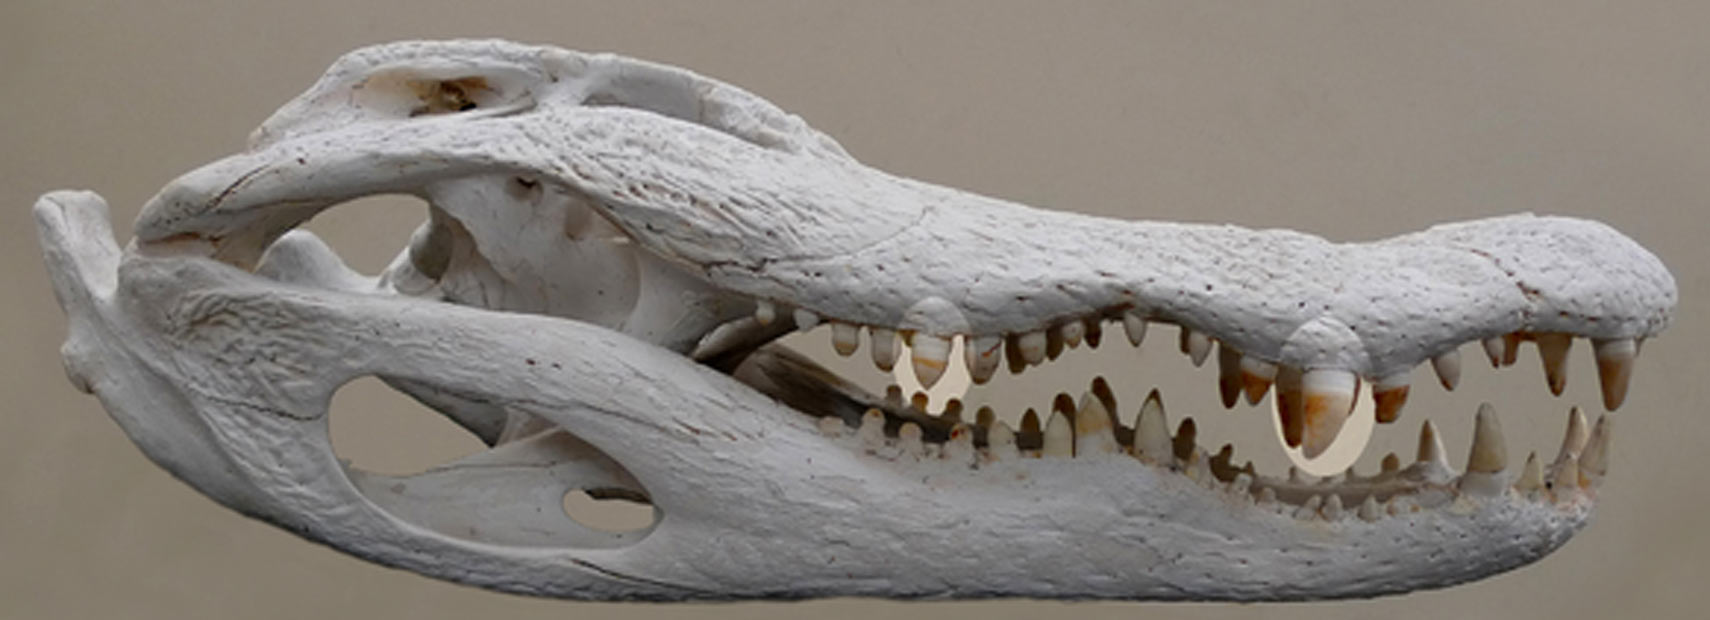 Mandíbula de espécie de crocodilo (Foto: Divulgação)